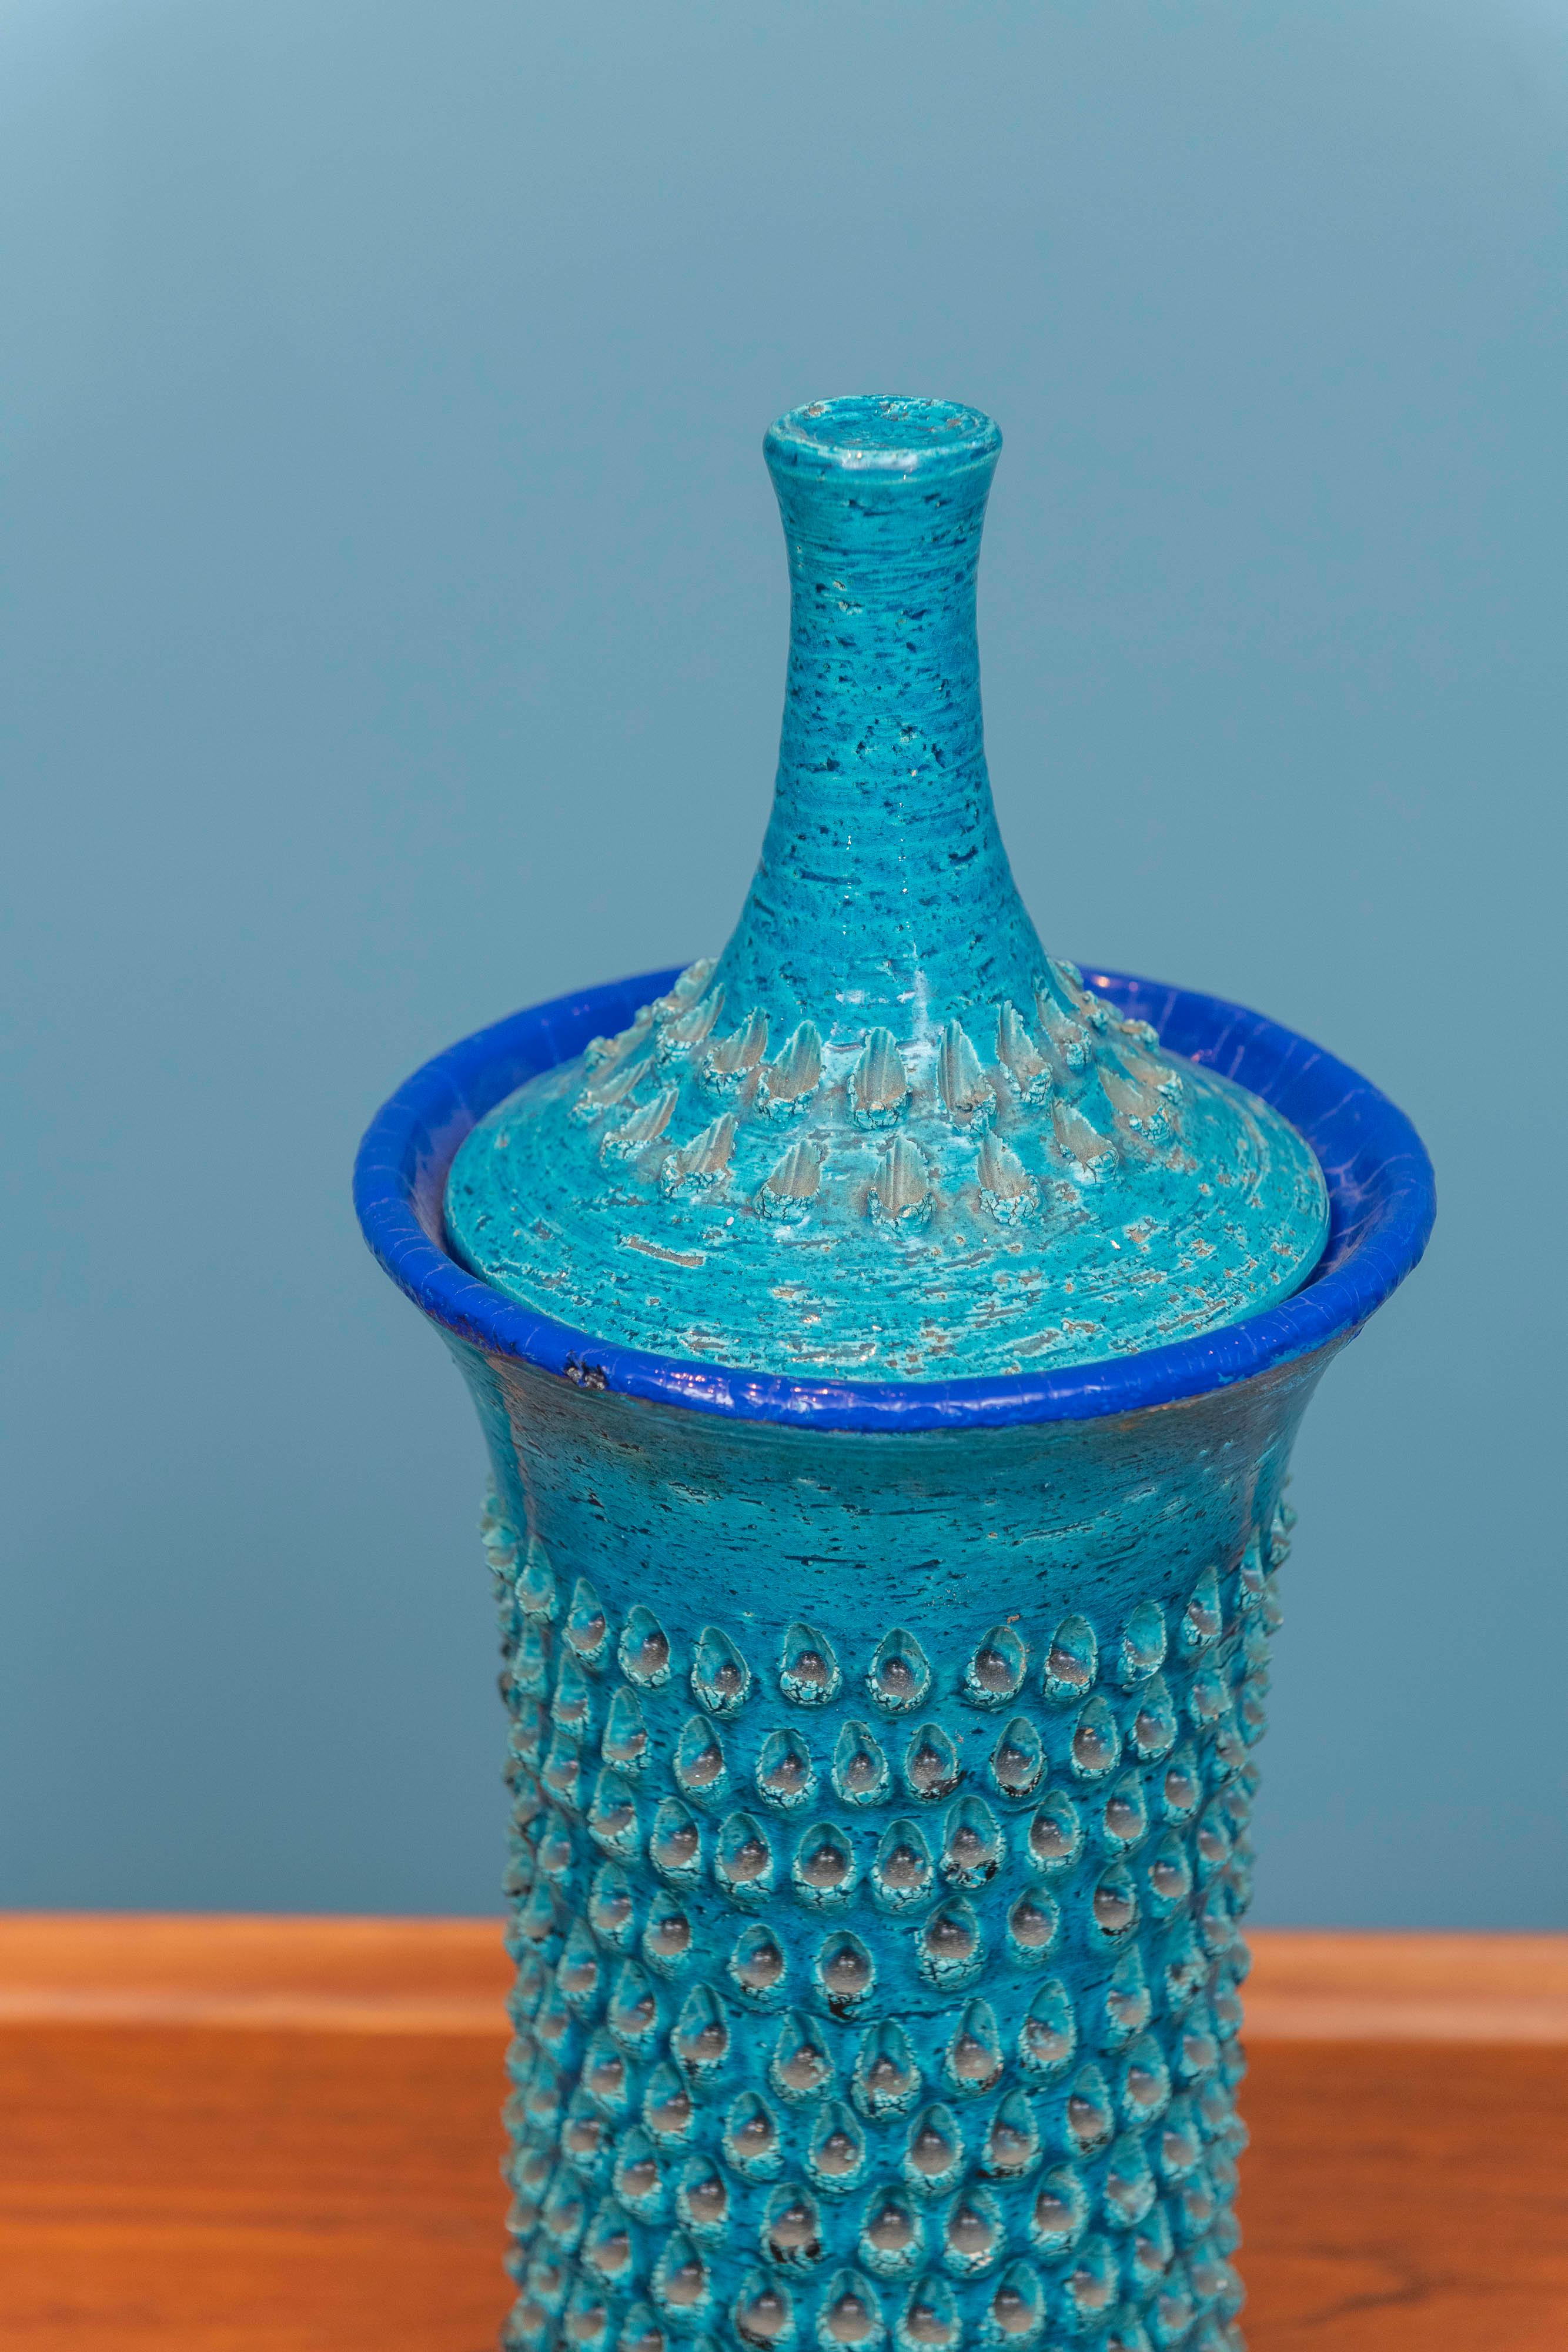 Vase ou pot en céramique texturée Bitossi avec couvercle assorti. Design/One intéressant, peu courant, en bleu Rimini avec des bordures bleues plus foncées. Quelques petites éraflures dues à l'âge qui n'enlèvent rien à l'impact de cette pièce. Prêt